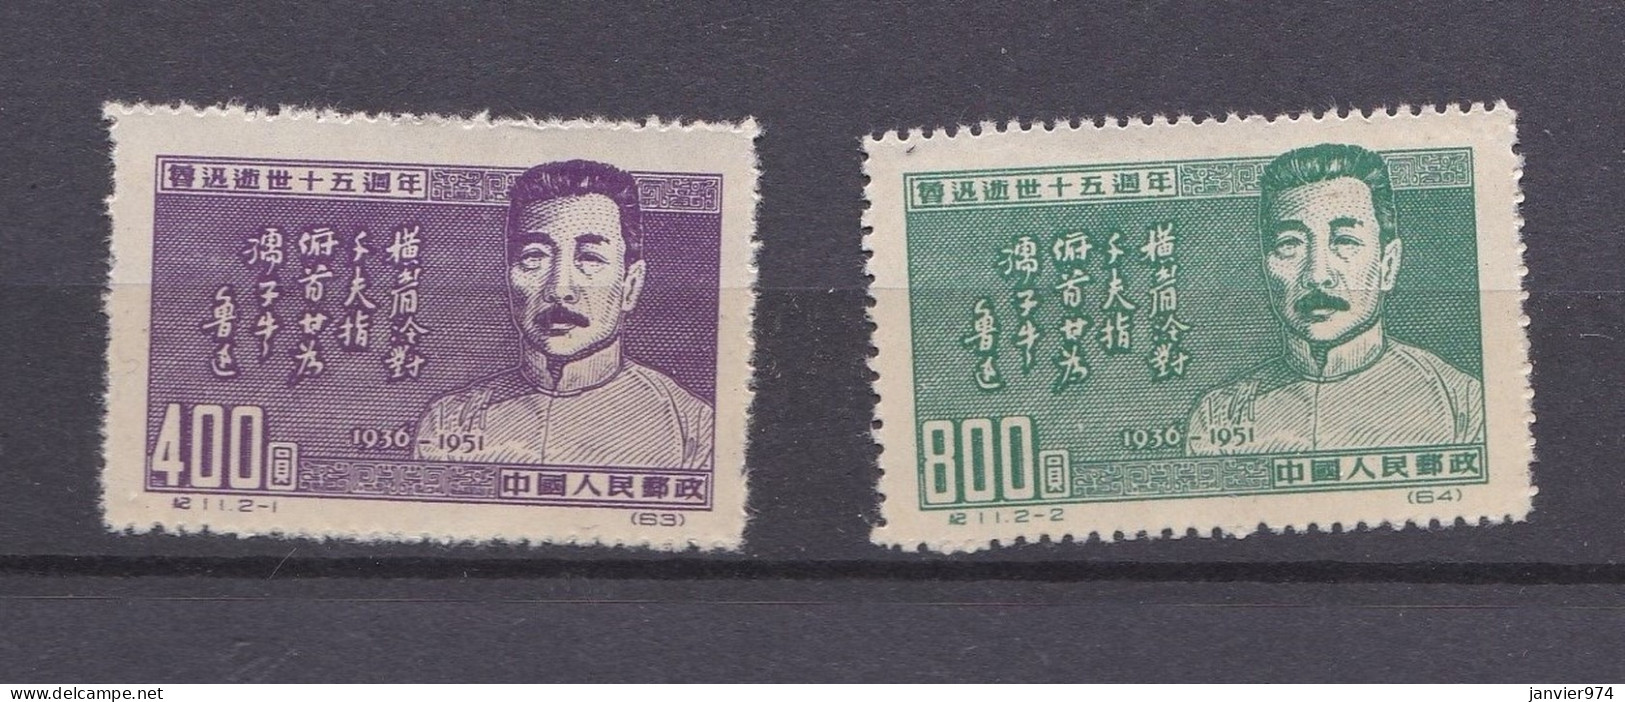 Chine 1951 La Serie Complete Anniversaire De La Mort De Lu Xun, 2 Timbres Neufs 127 – 128 - Ungebraucht